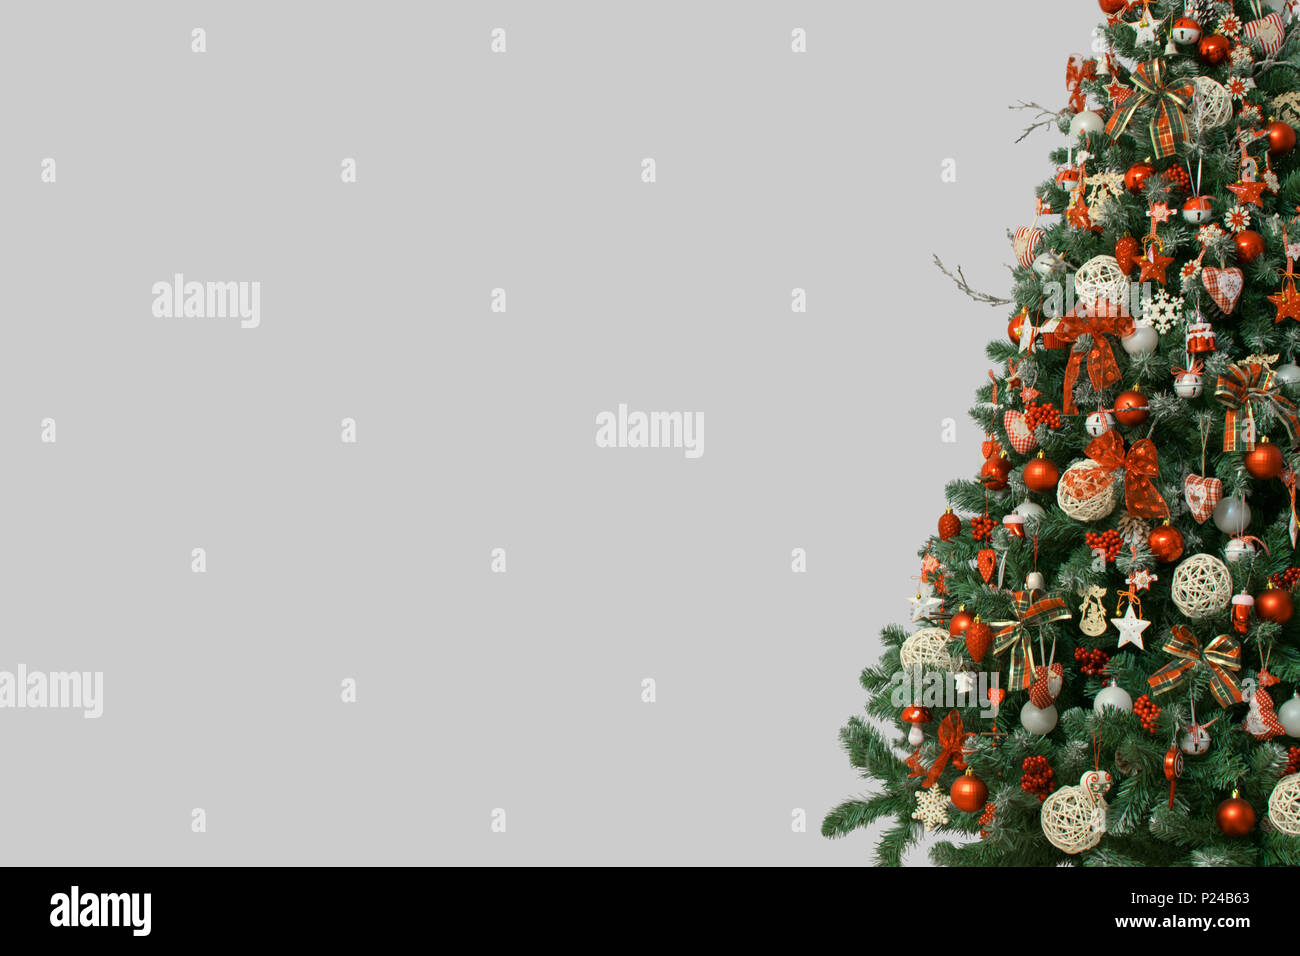 La moitié de l'arbre de Noël isolé sur fond gris, décoré avec des ornements de cru ; ratan, boules et rubans de toile tartan, flocons en bois Banque D'Images